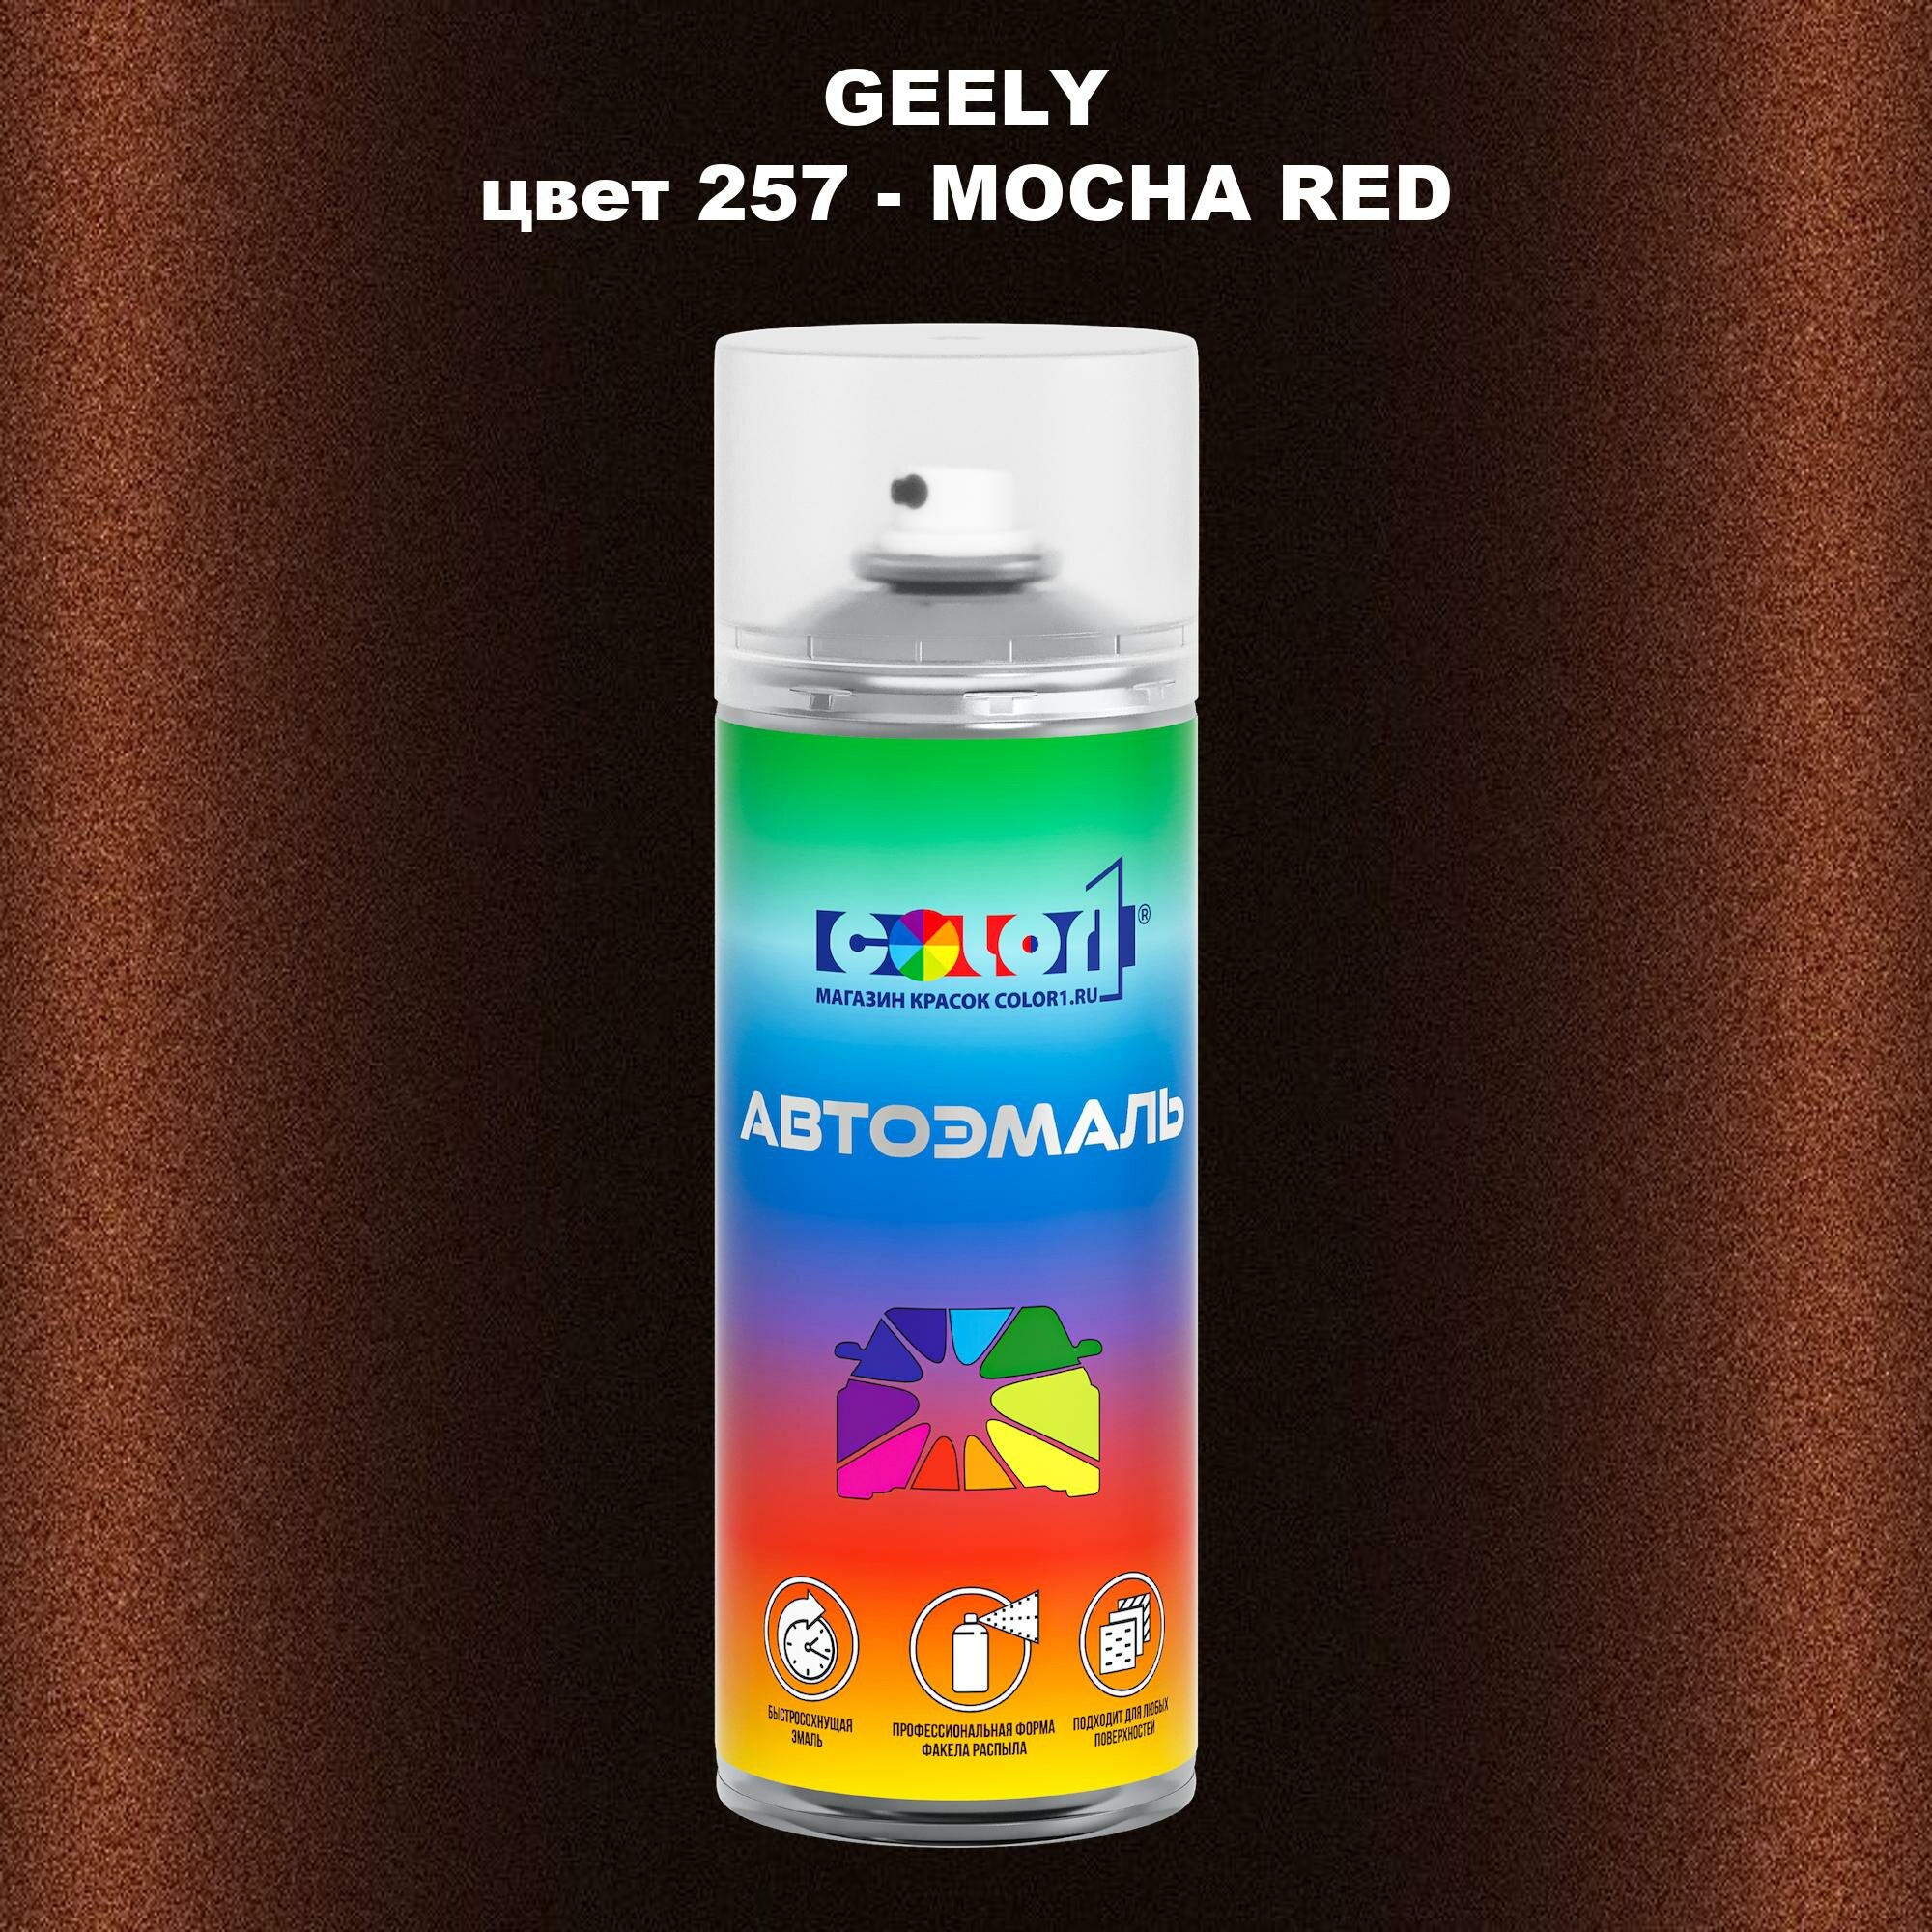 Аэрозольная краска COLOR1 для GEELY, цвет 257 - MOCHA RED